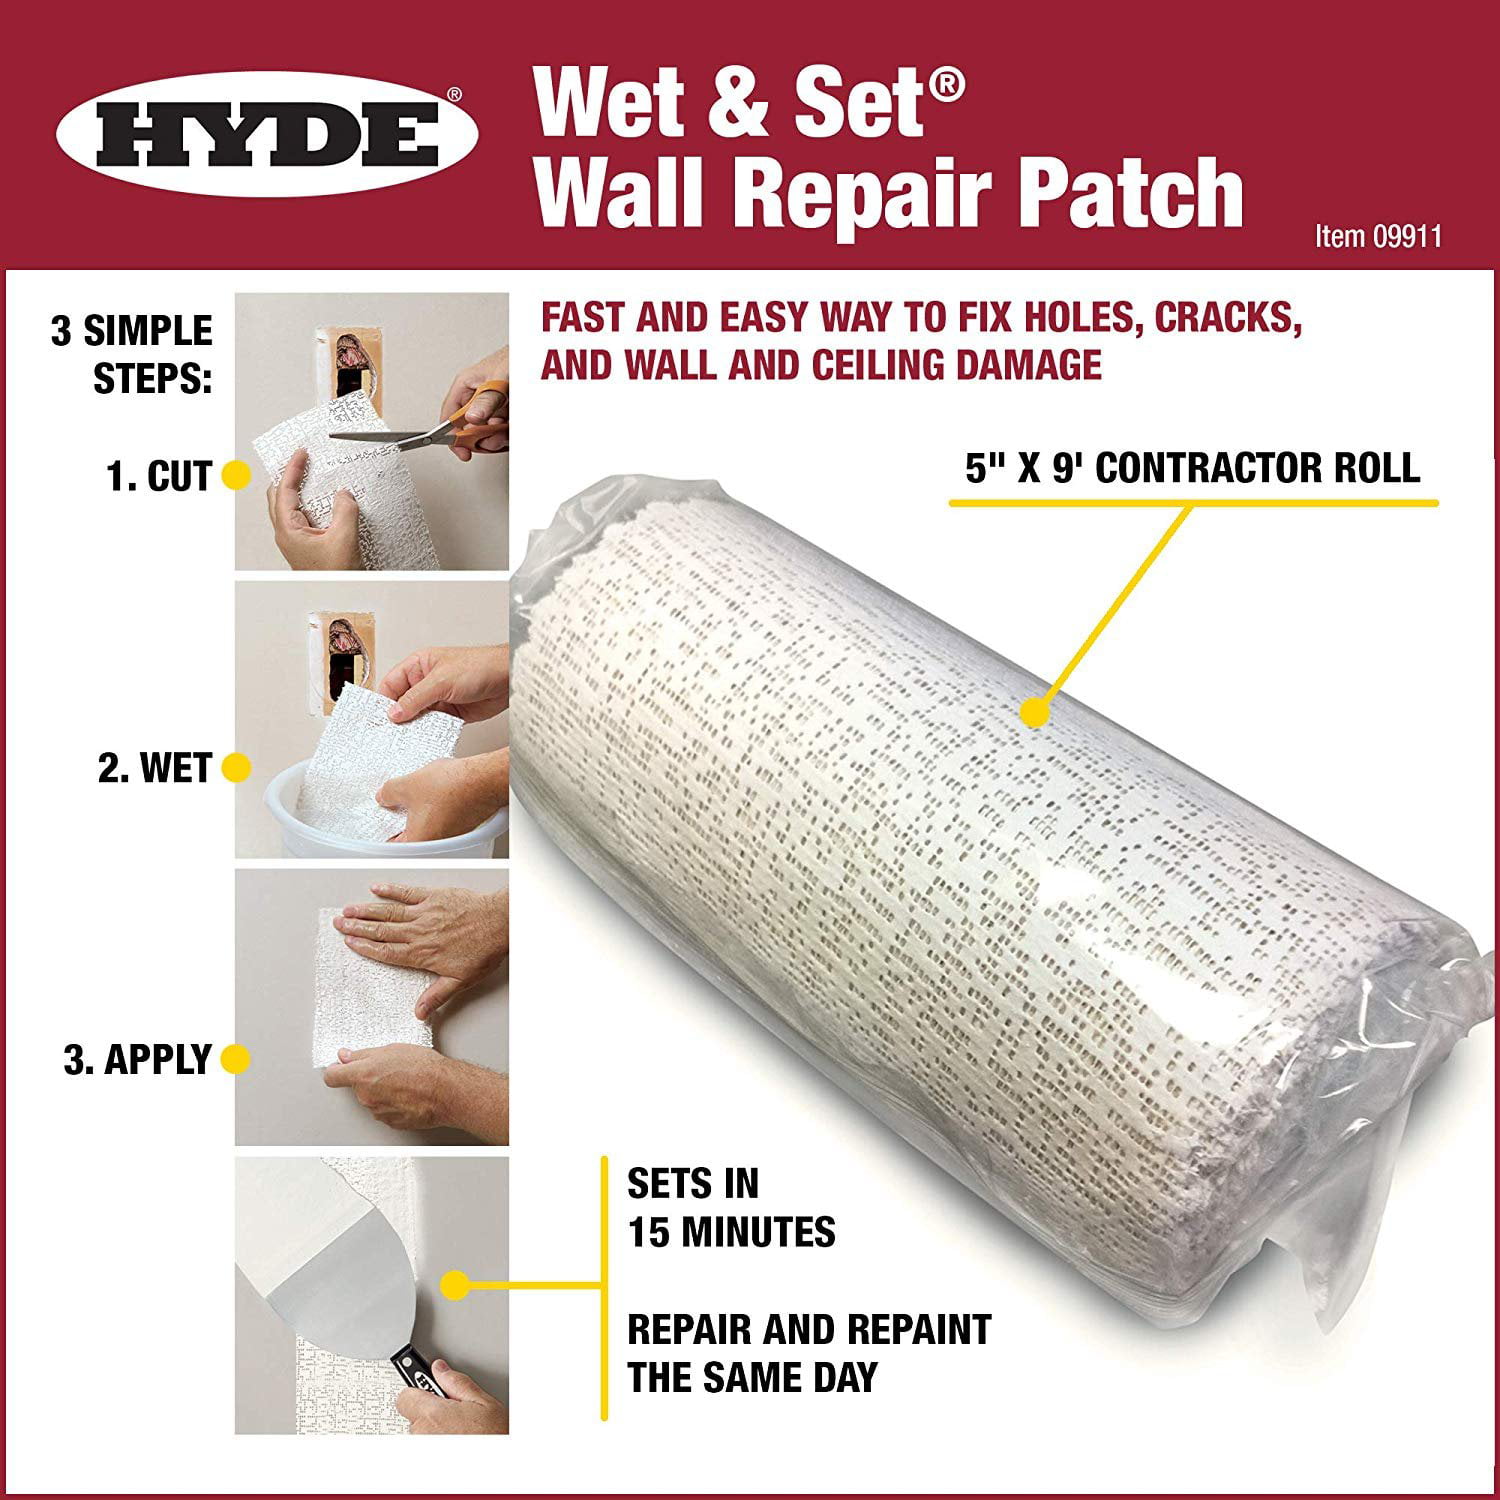 Hyde Better Finish Wall Repair Kit